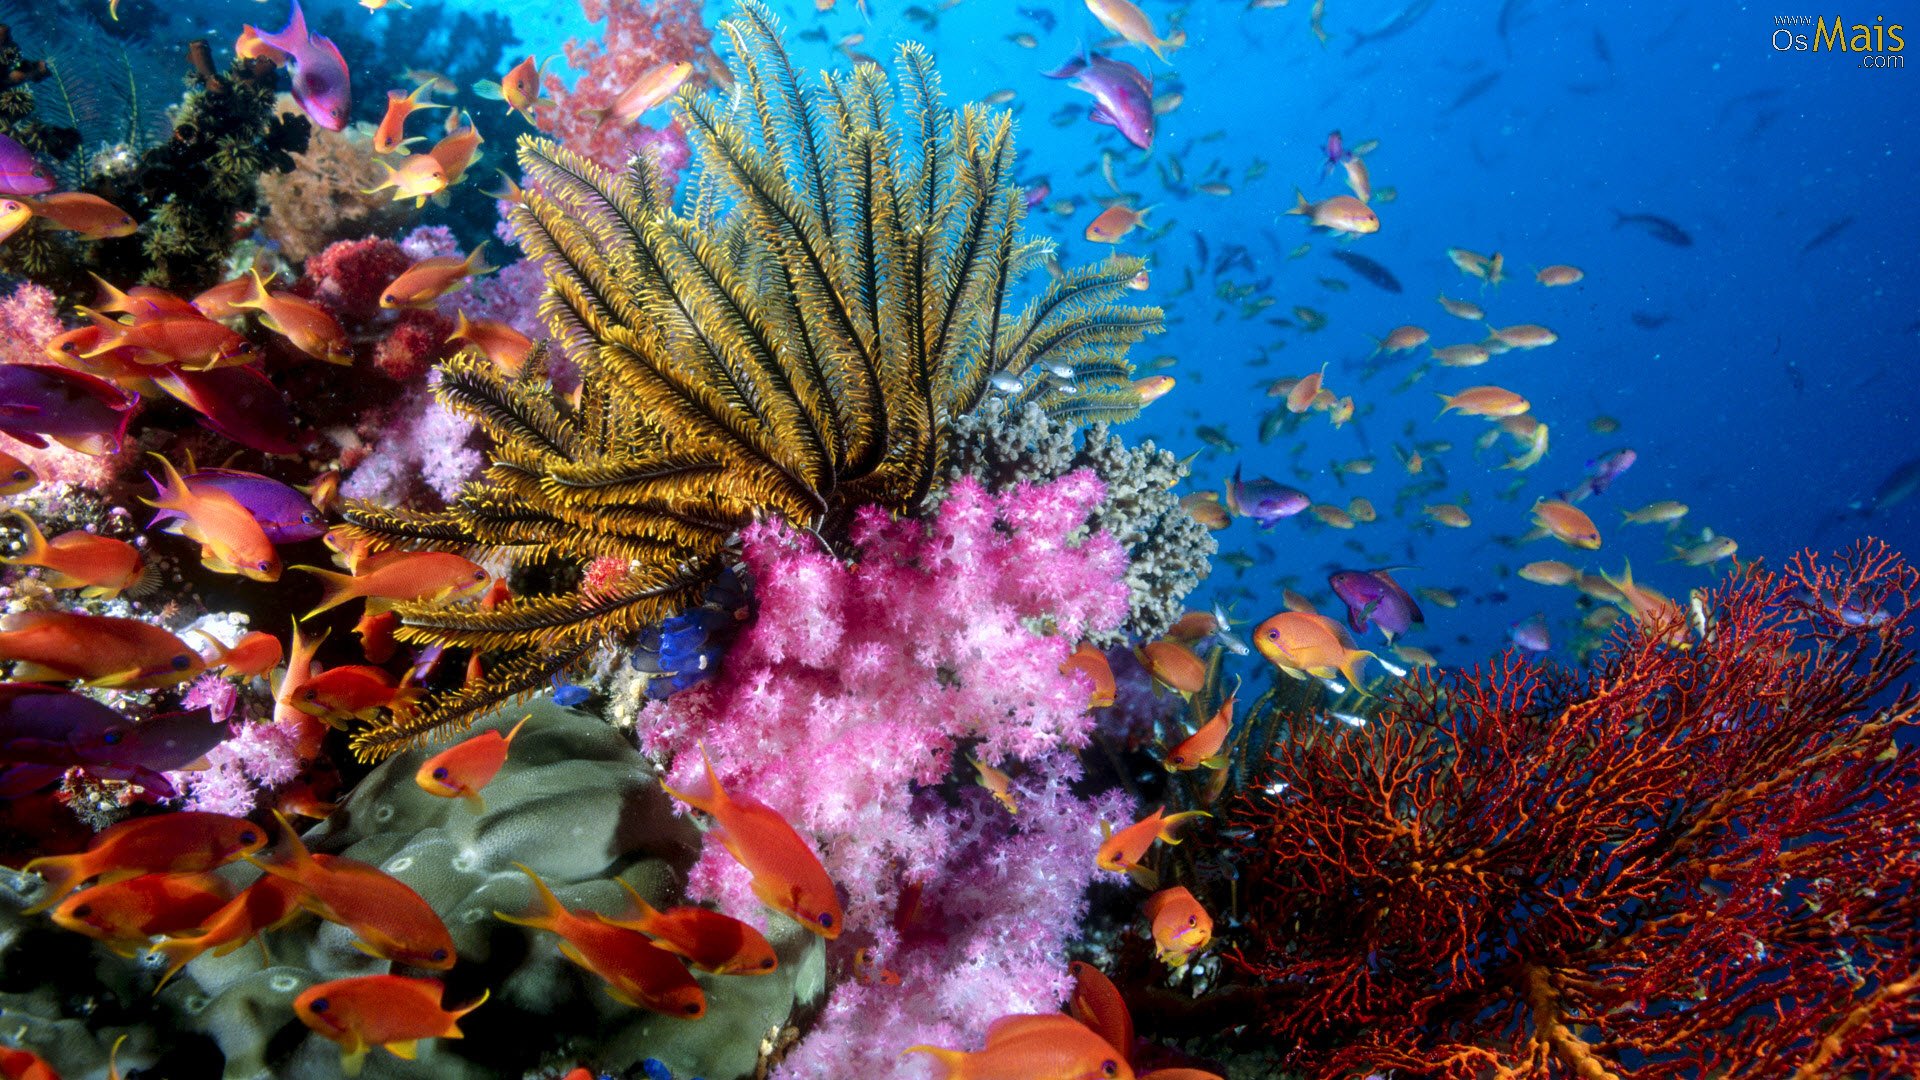 fond d'écran fundo do mar,récif,récif de corail,sous marin,biologie marine,poissons de récifs coralliens